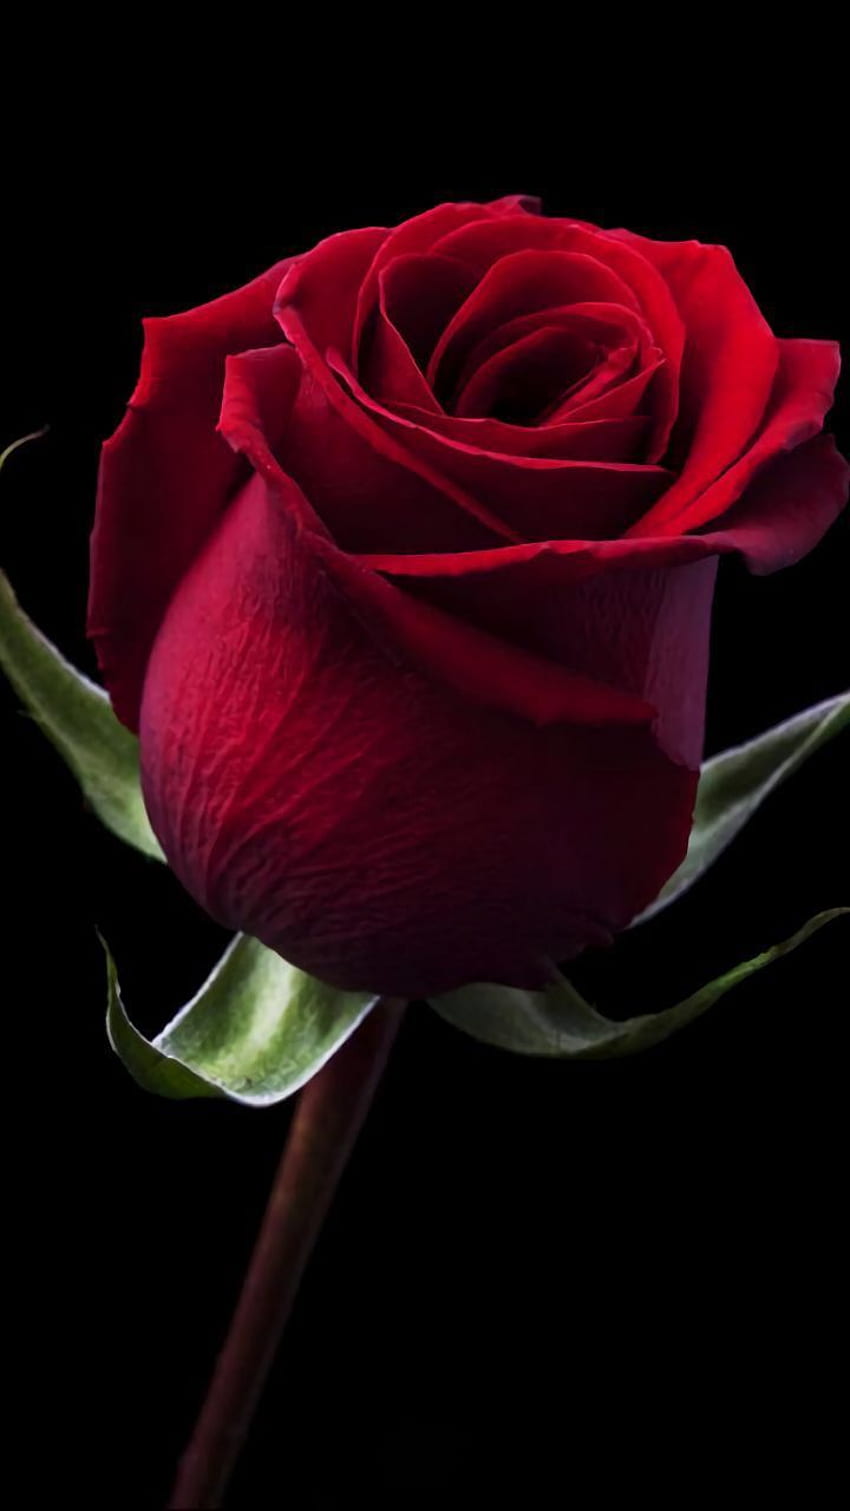 Rosa roja profunda en la oscuridad. Mawar cantik, Mawar ungu, Kebun bunga, Flor roja oscura fondo de pantalla del teléfono